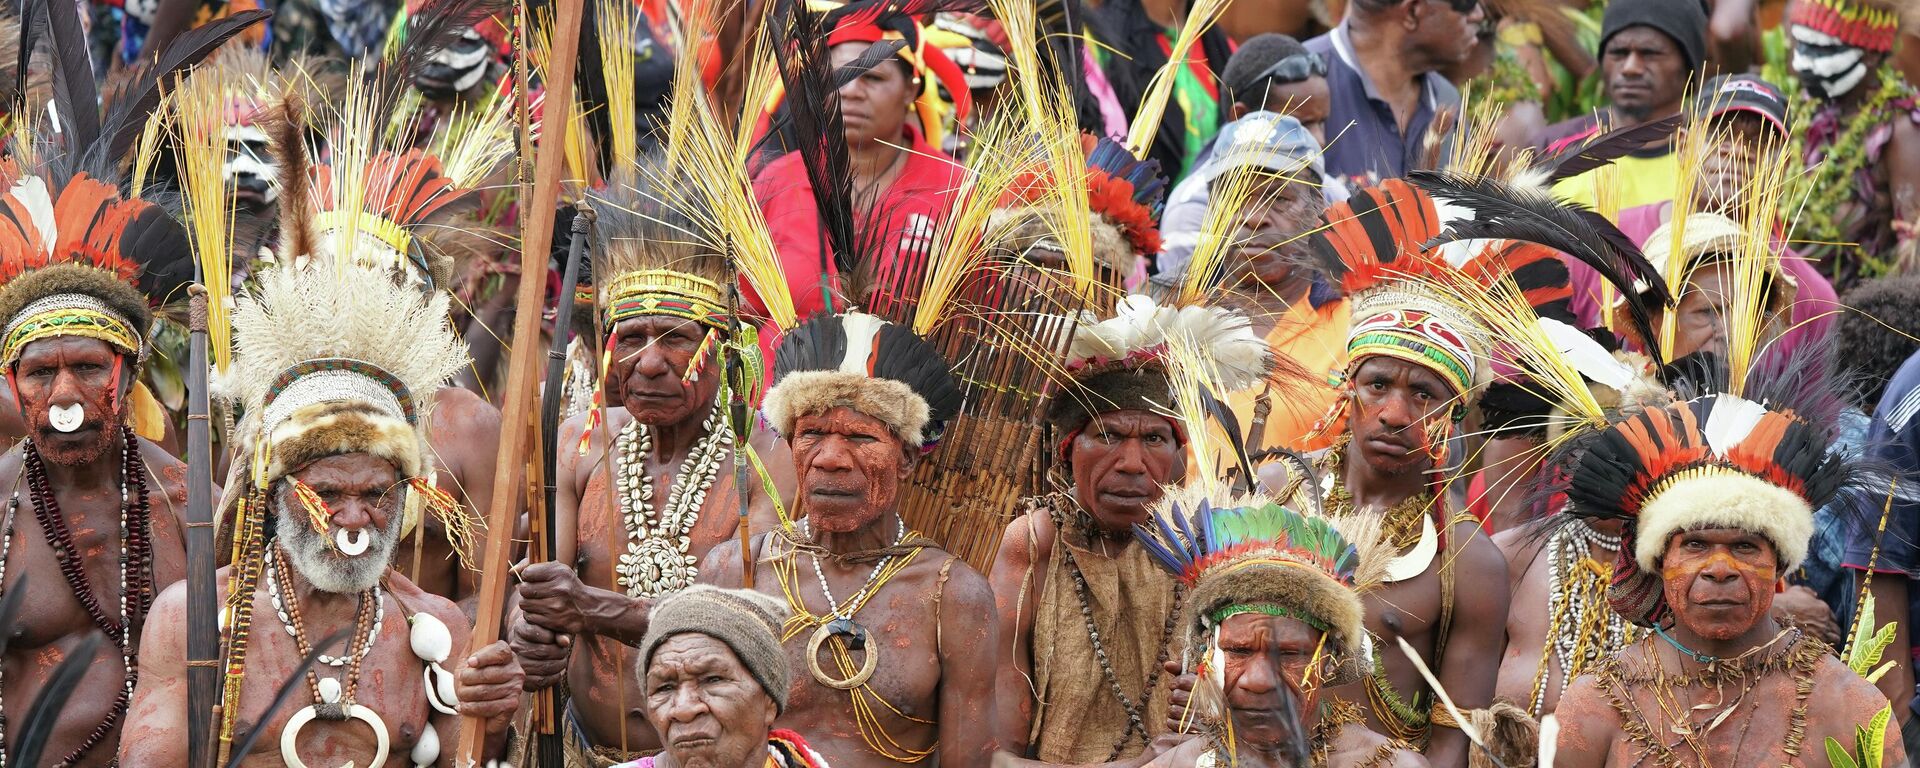 Žmonės su tradiciniais kostiumais festivalyje Papua Naujojoje Gvinėjoje - Sputnik Lietuva, 1920, 23.07.2021